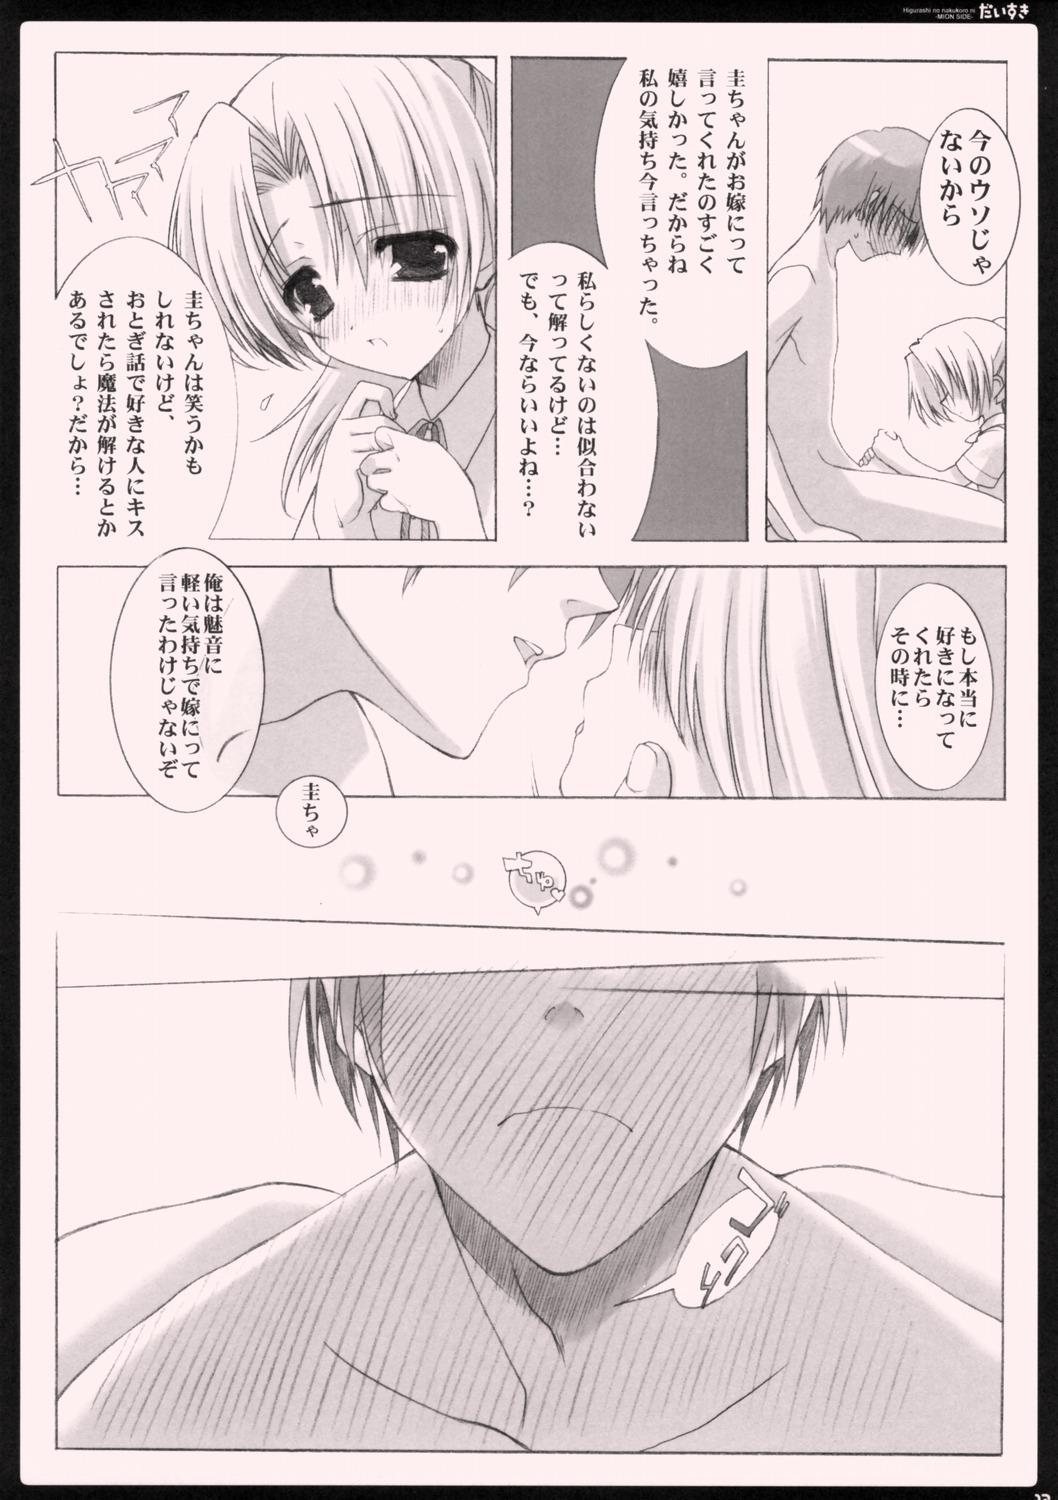 Mamada Daisuki. - Higurashi no naku koro ni Periscope - Page 11